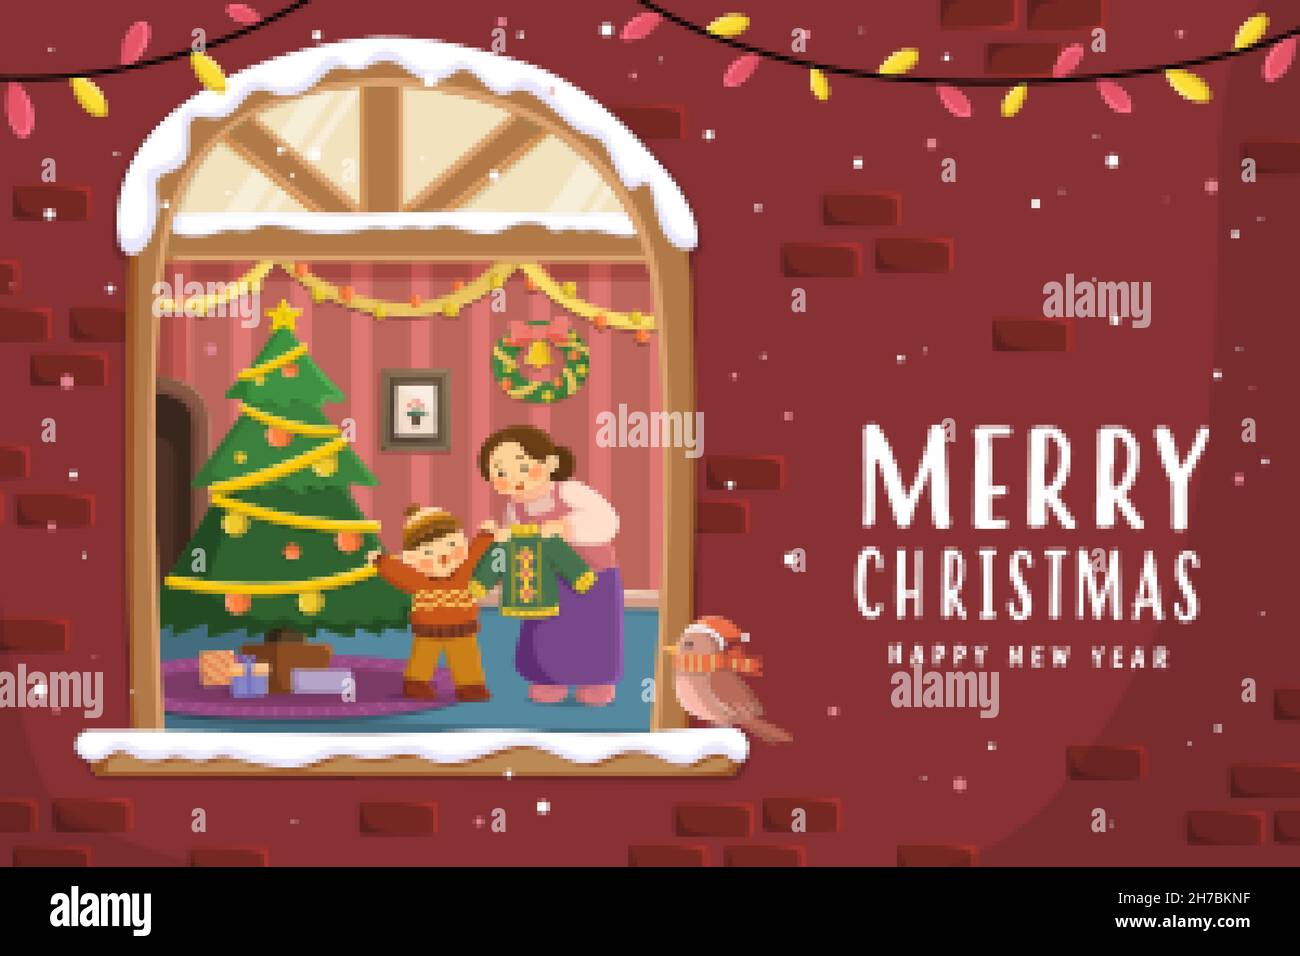 Carte de vœux de Noël pour la famille.En regardant dans la fenêtre sur le mur de briques, il y a une mère qui donne un gilet à son fils debout près de l'arbre de Noël Illustration de Vecteur